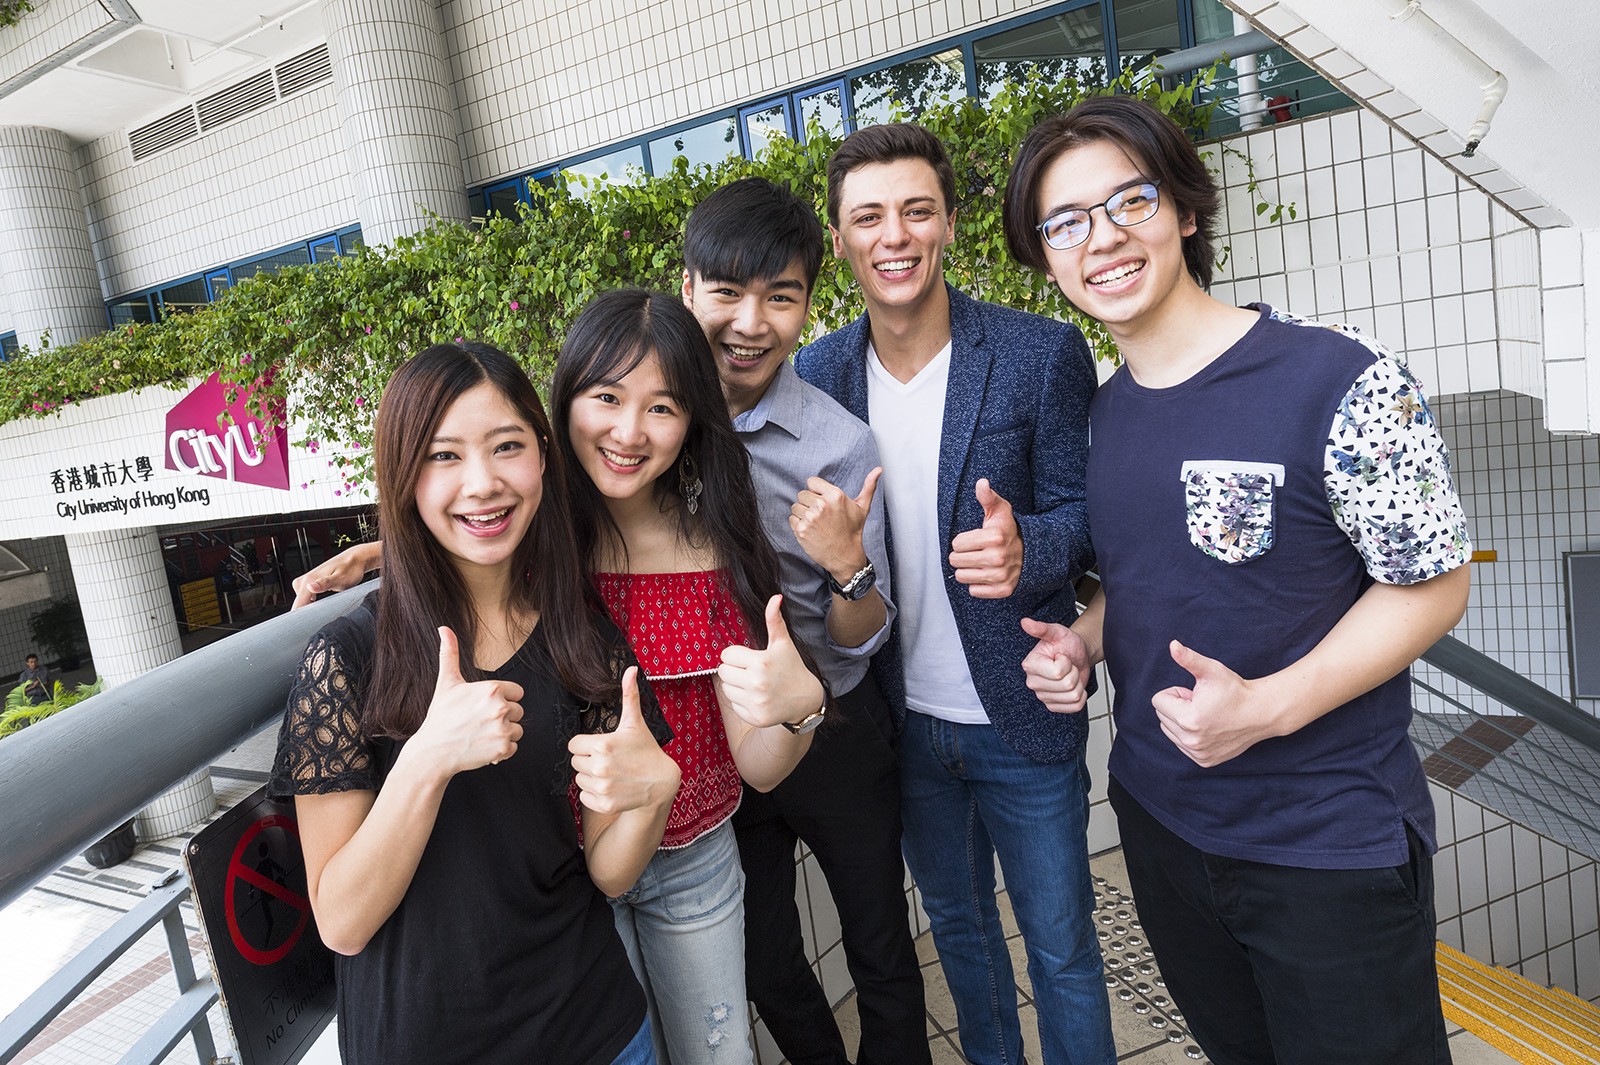 「城大香港精英獎學金」得主有機會獲得全數四年學費資助。